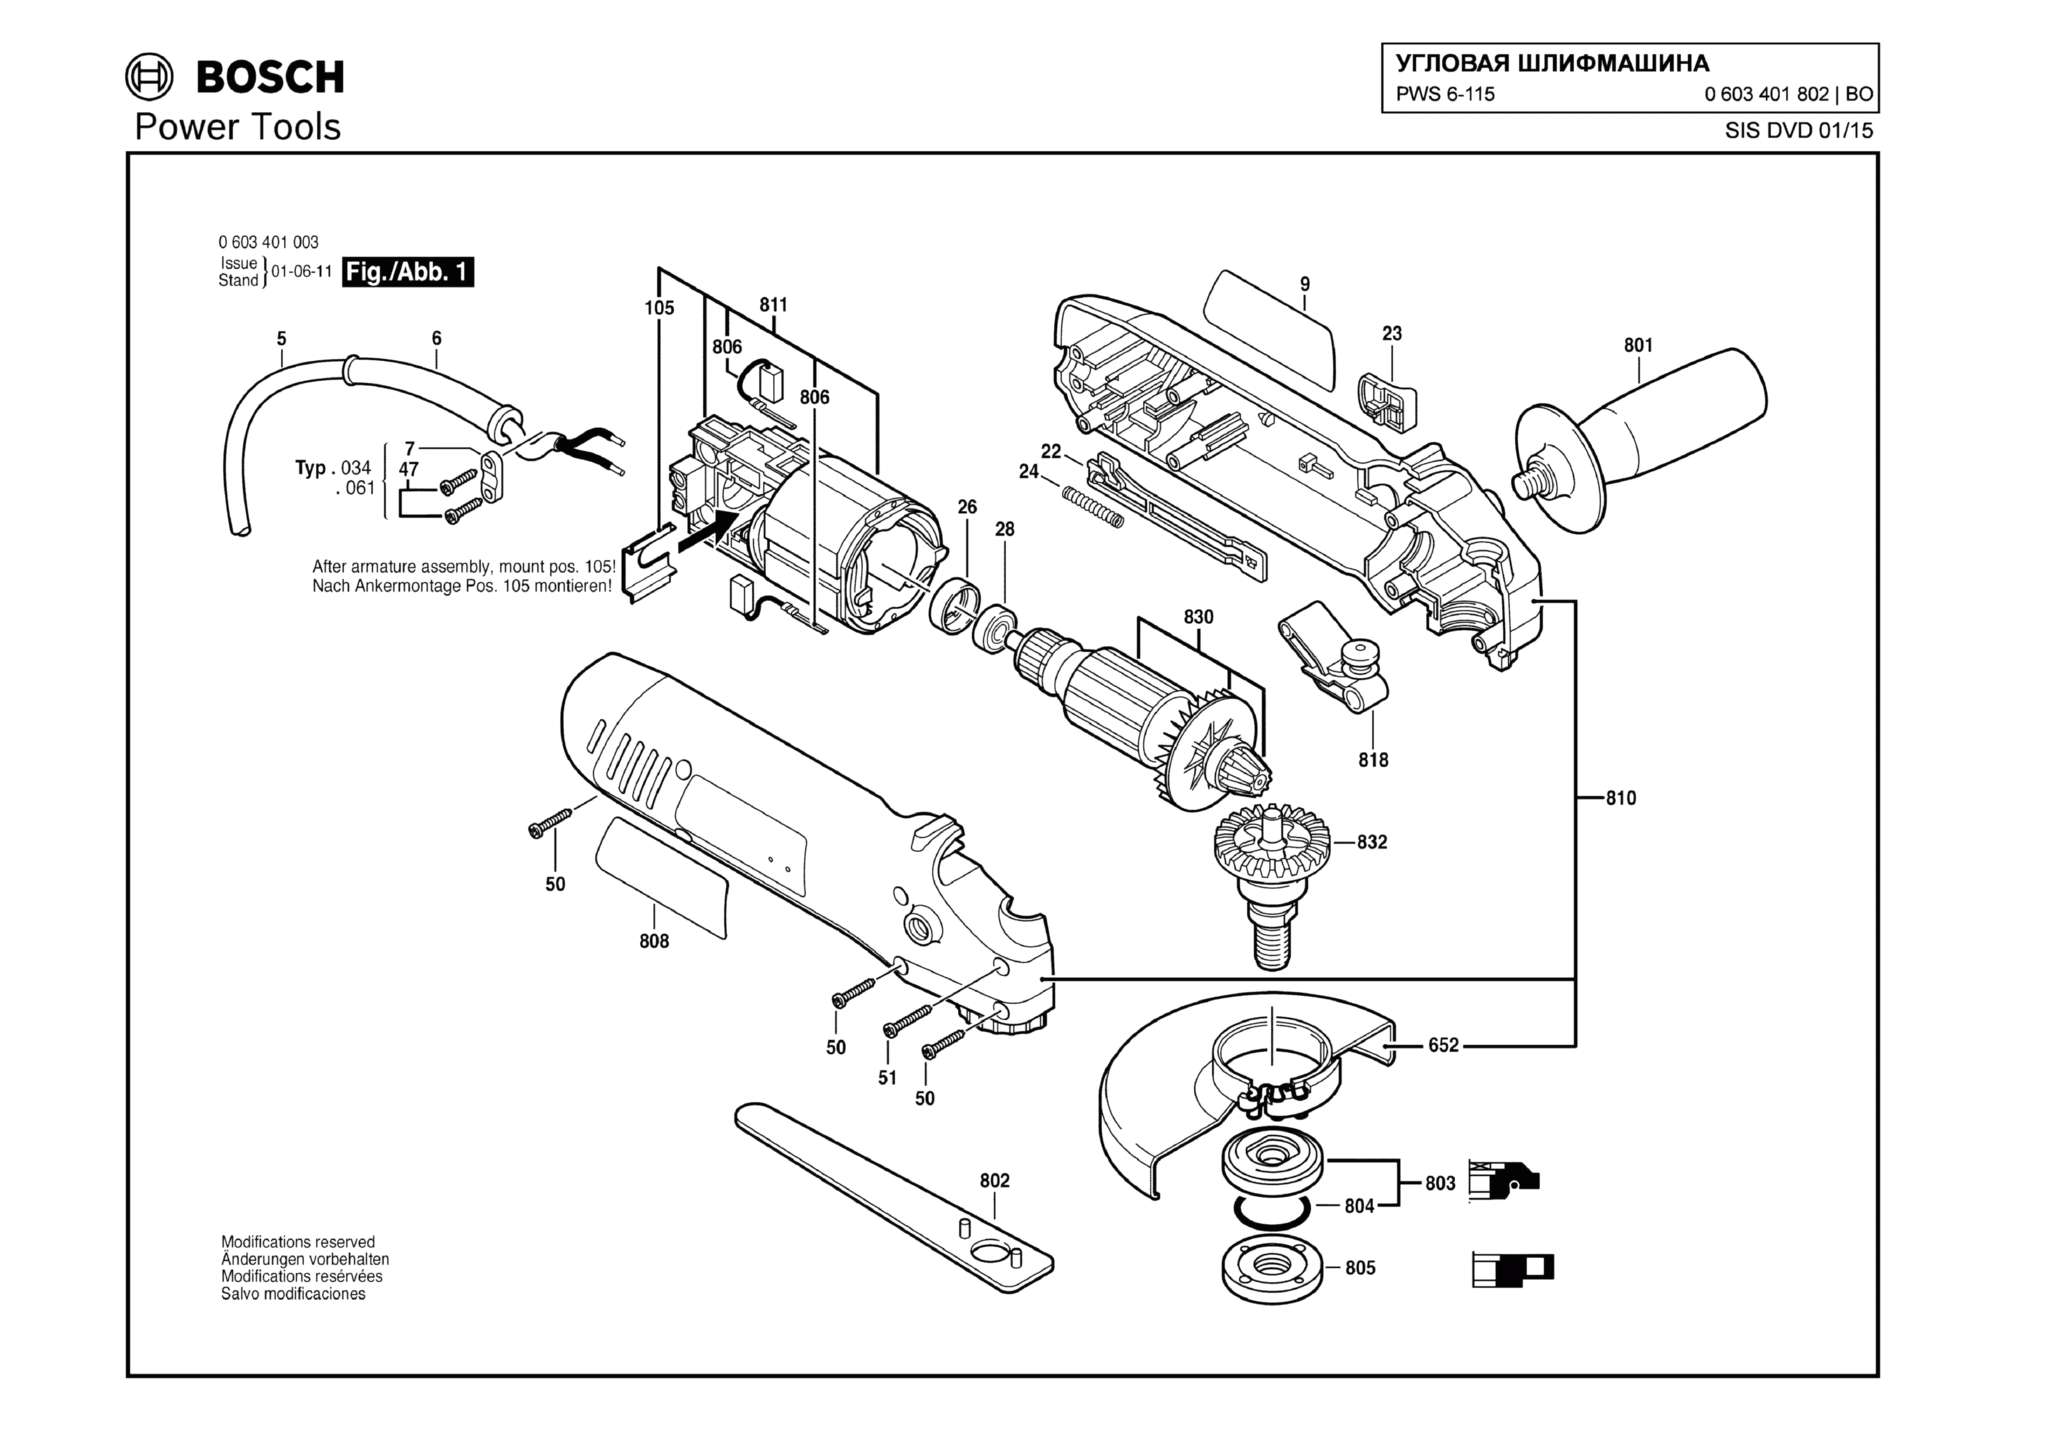 Запчасти, схема и деталировка Bosch PWS 6-115 (ТИП 0603401802)